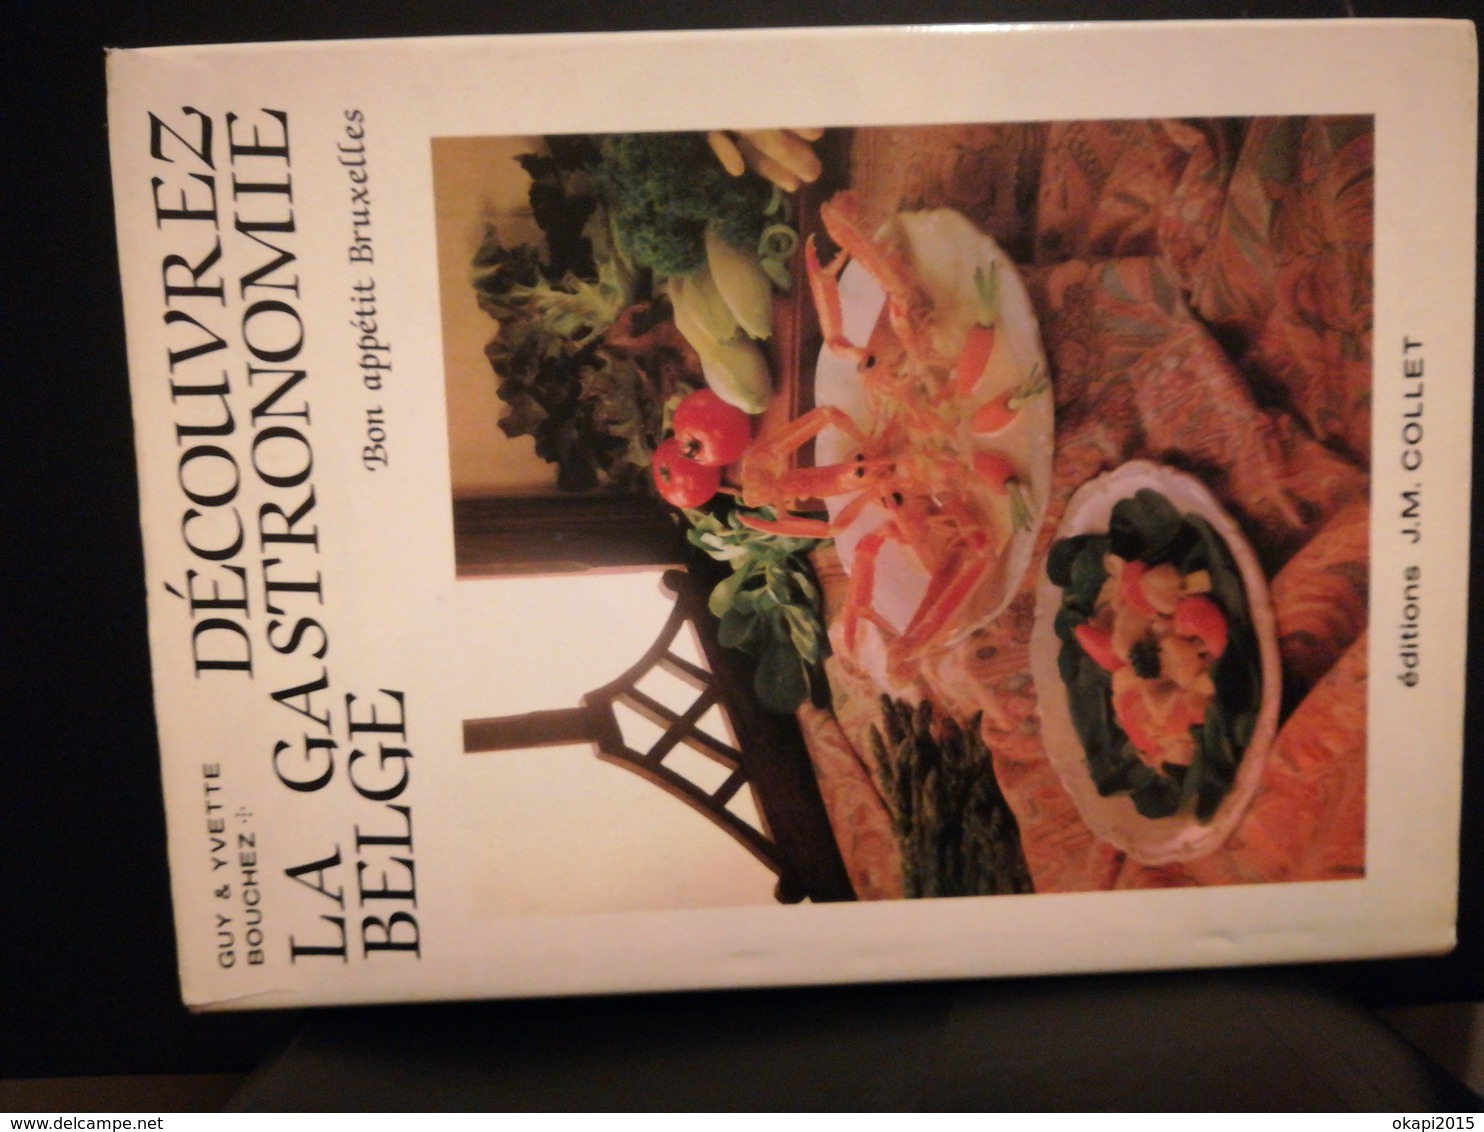 DÉCOUVREZ LA GASTRONOMIE BELGE VIEUX LIVRE CUISINE RÉGIONALISME BELGIQUE BRUXELLES ANNÉE 1983 - Gastronomie